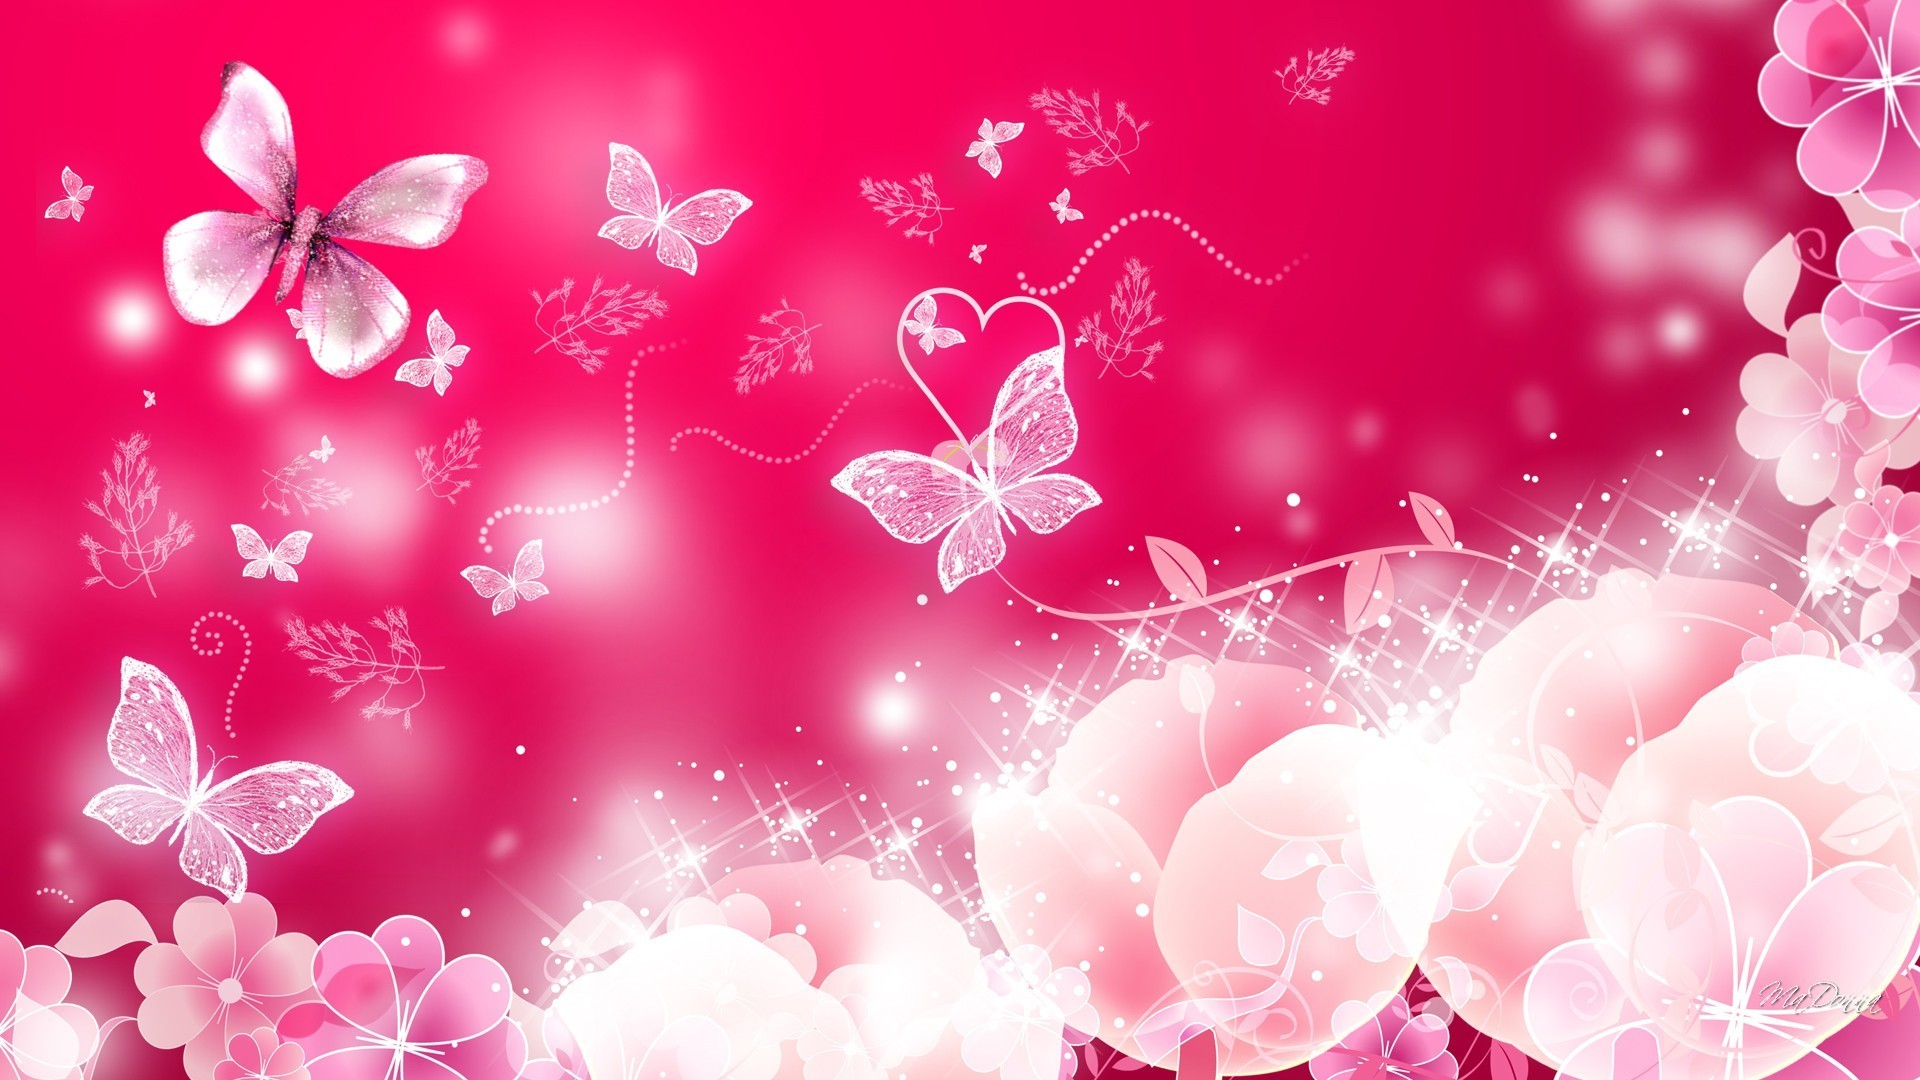 1920x1080 Â«Neon Pink Butterfly Wallpaper - Bing imagesÂ» — ÐºÐ°ÑÑÐ¾ÑÐºÐ° Ð¿Ð¾Ð»ÑÐ·Ð¾Ð²Ð°ÑÐµÐ»Ñ  ecaterina.askerova Ð² Ð¯Ð½Ð´ÐµÐºÑ.ÐÐ¾Ð»Ð»ÐµÐºÑÐ¸ÑÑ